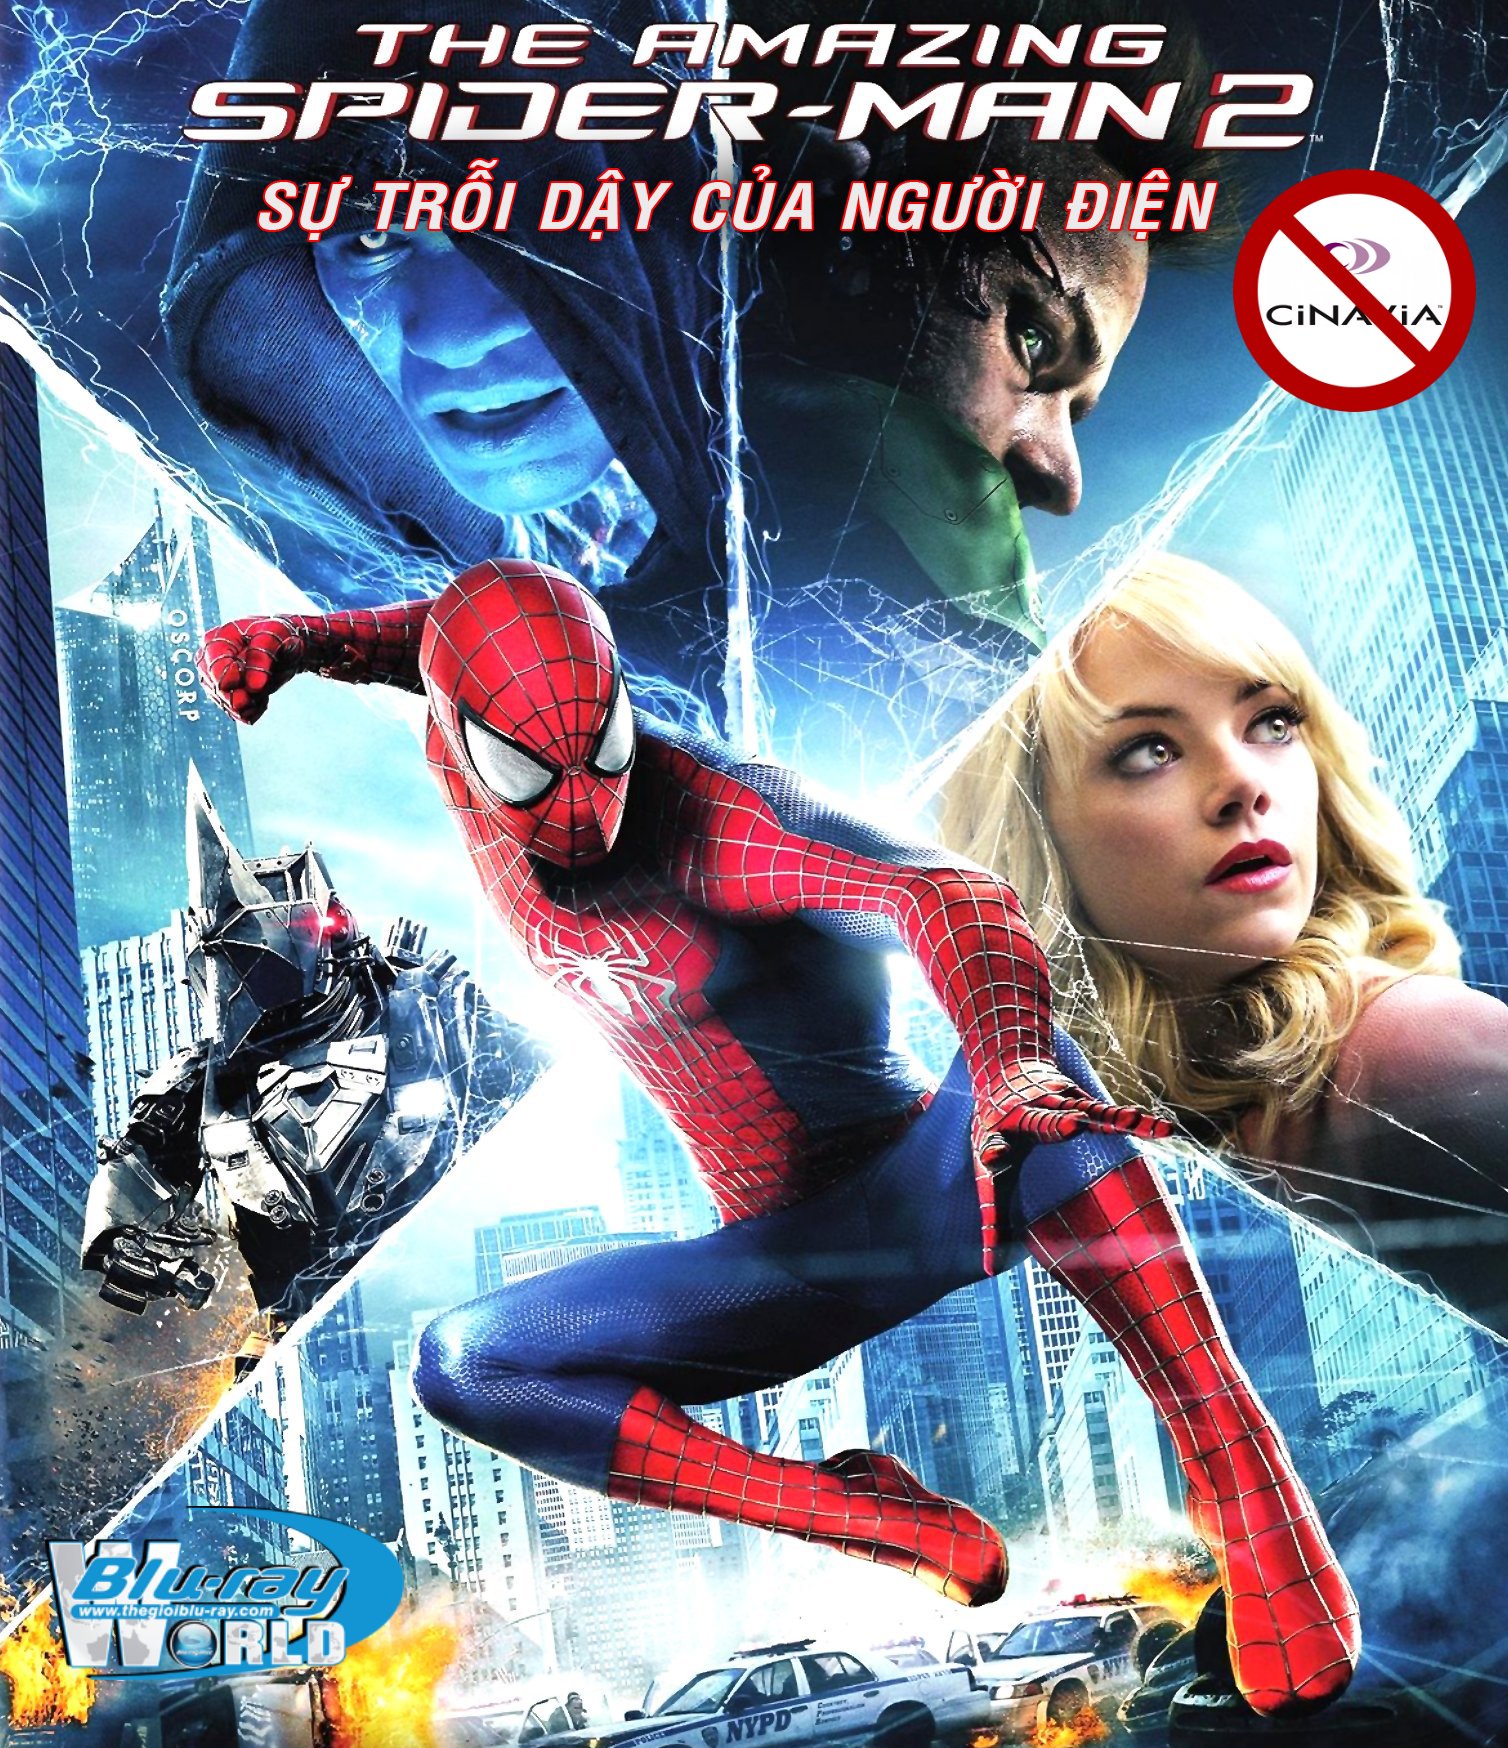 B1834. The Amazing Spider Man 2 - SỰ TRỖI DẬY CỦA NGƯỜI ĐIỆN 2D 25G (DTS-HD MA 5.1) nocinavia